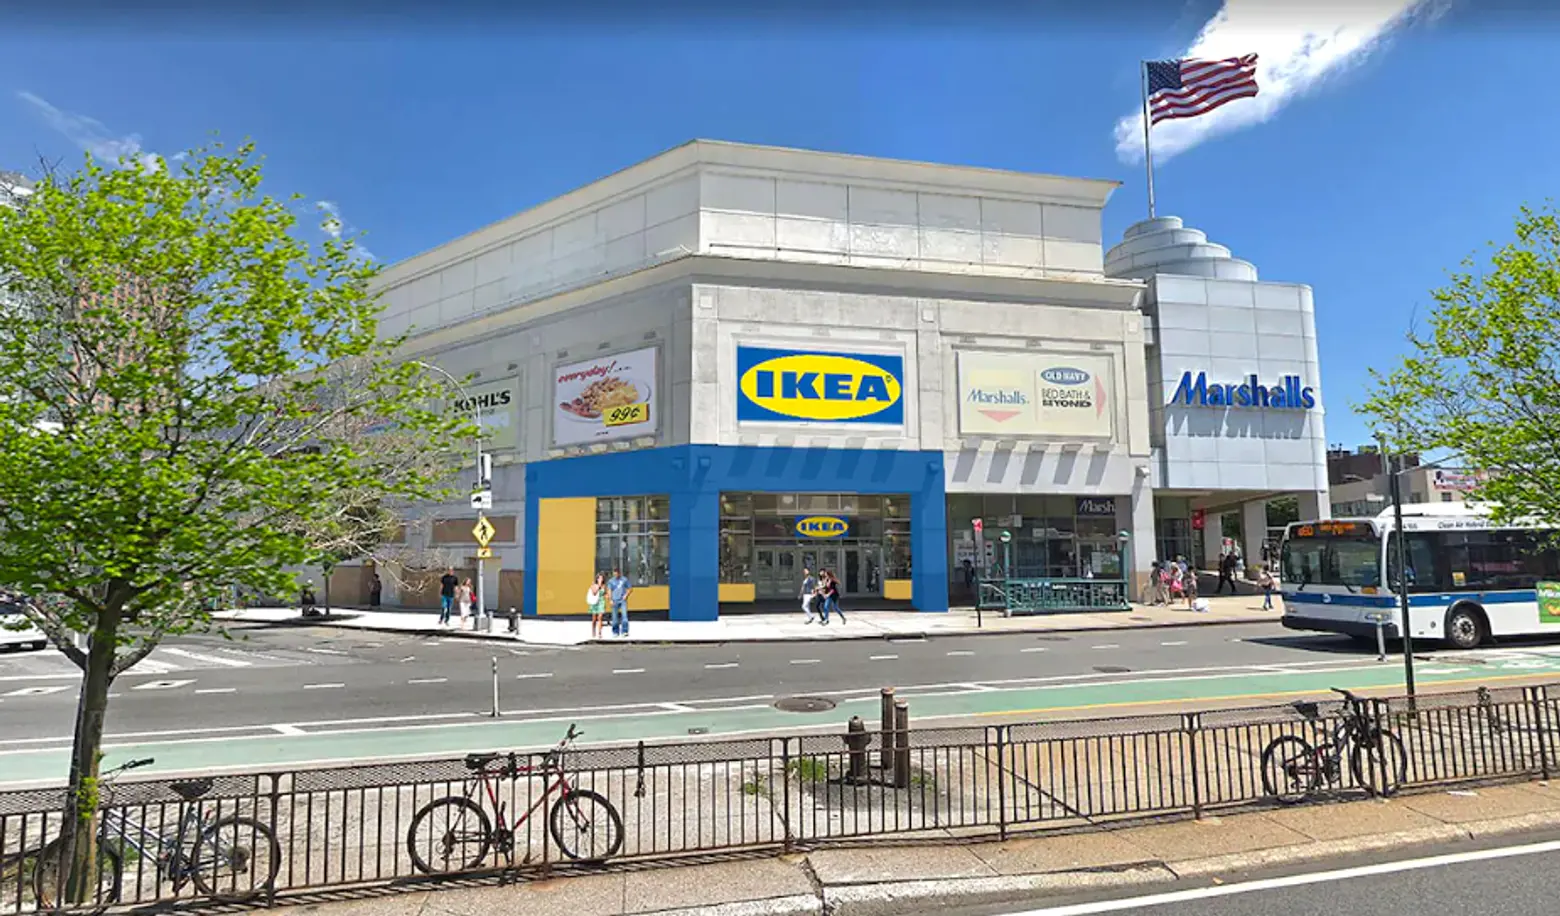 IKEA will open in Queens next summer